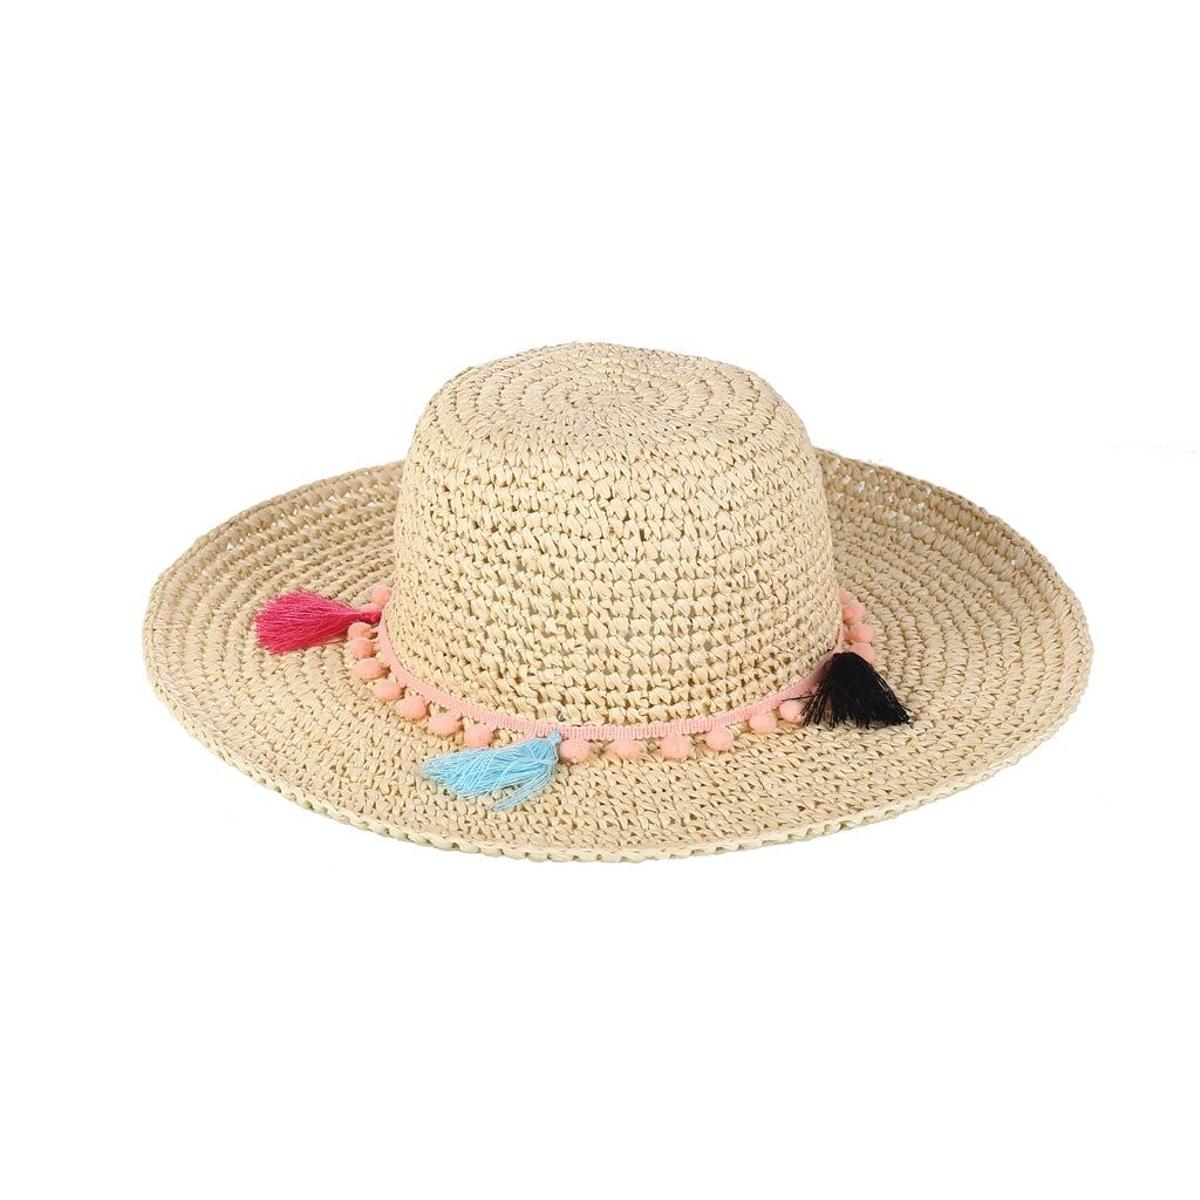 El sombrero de Instagram: con pompones